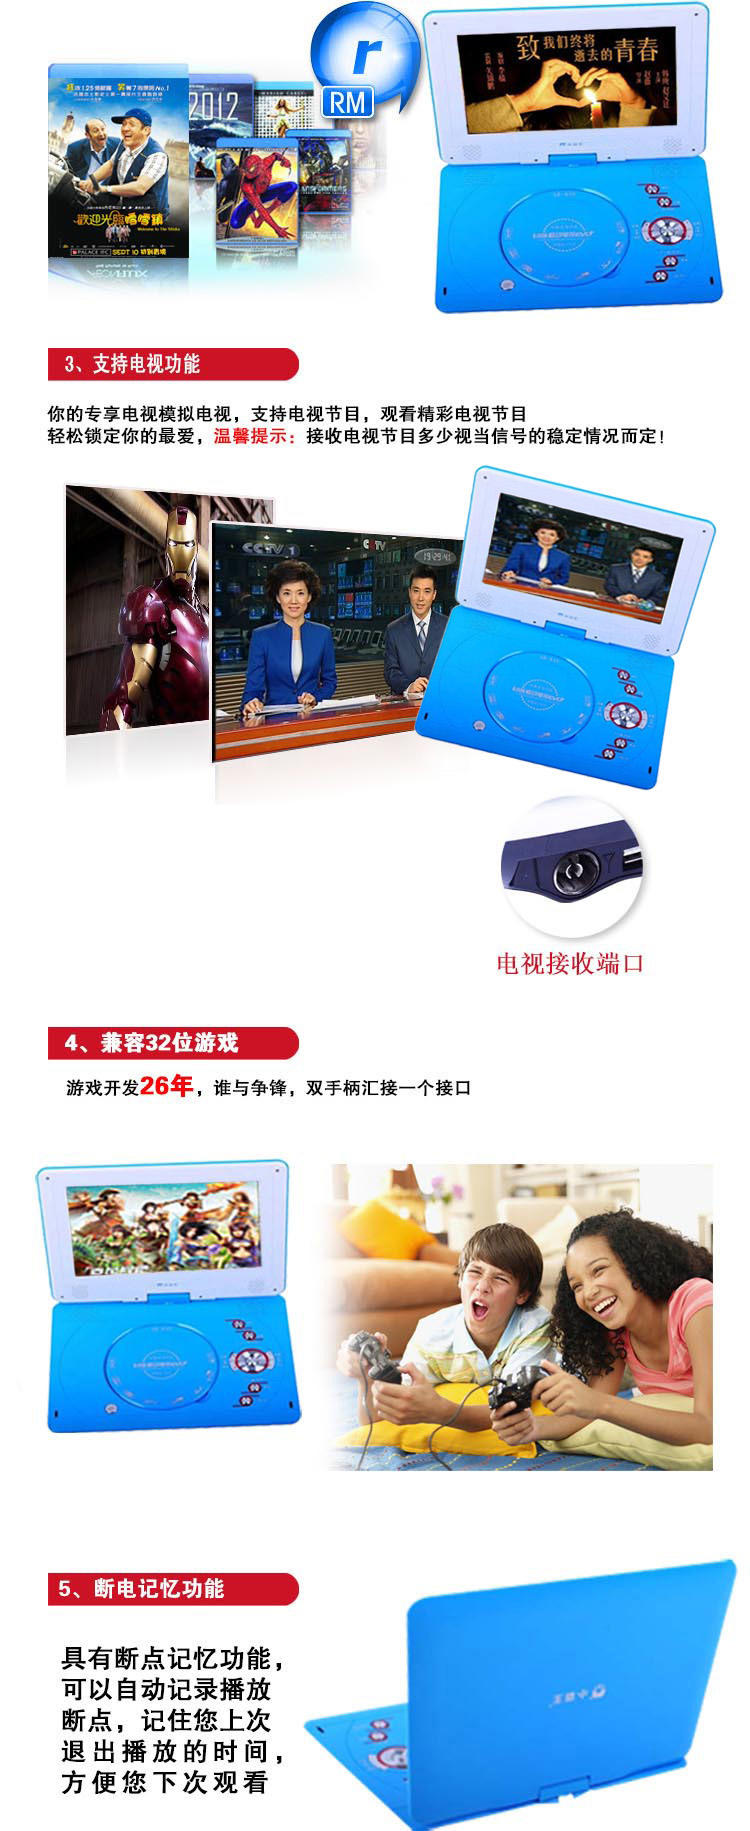 小霸王移动电视DVD SB-635 高清便携式播放器游戏3D模式接USB支持RMVB 12寸